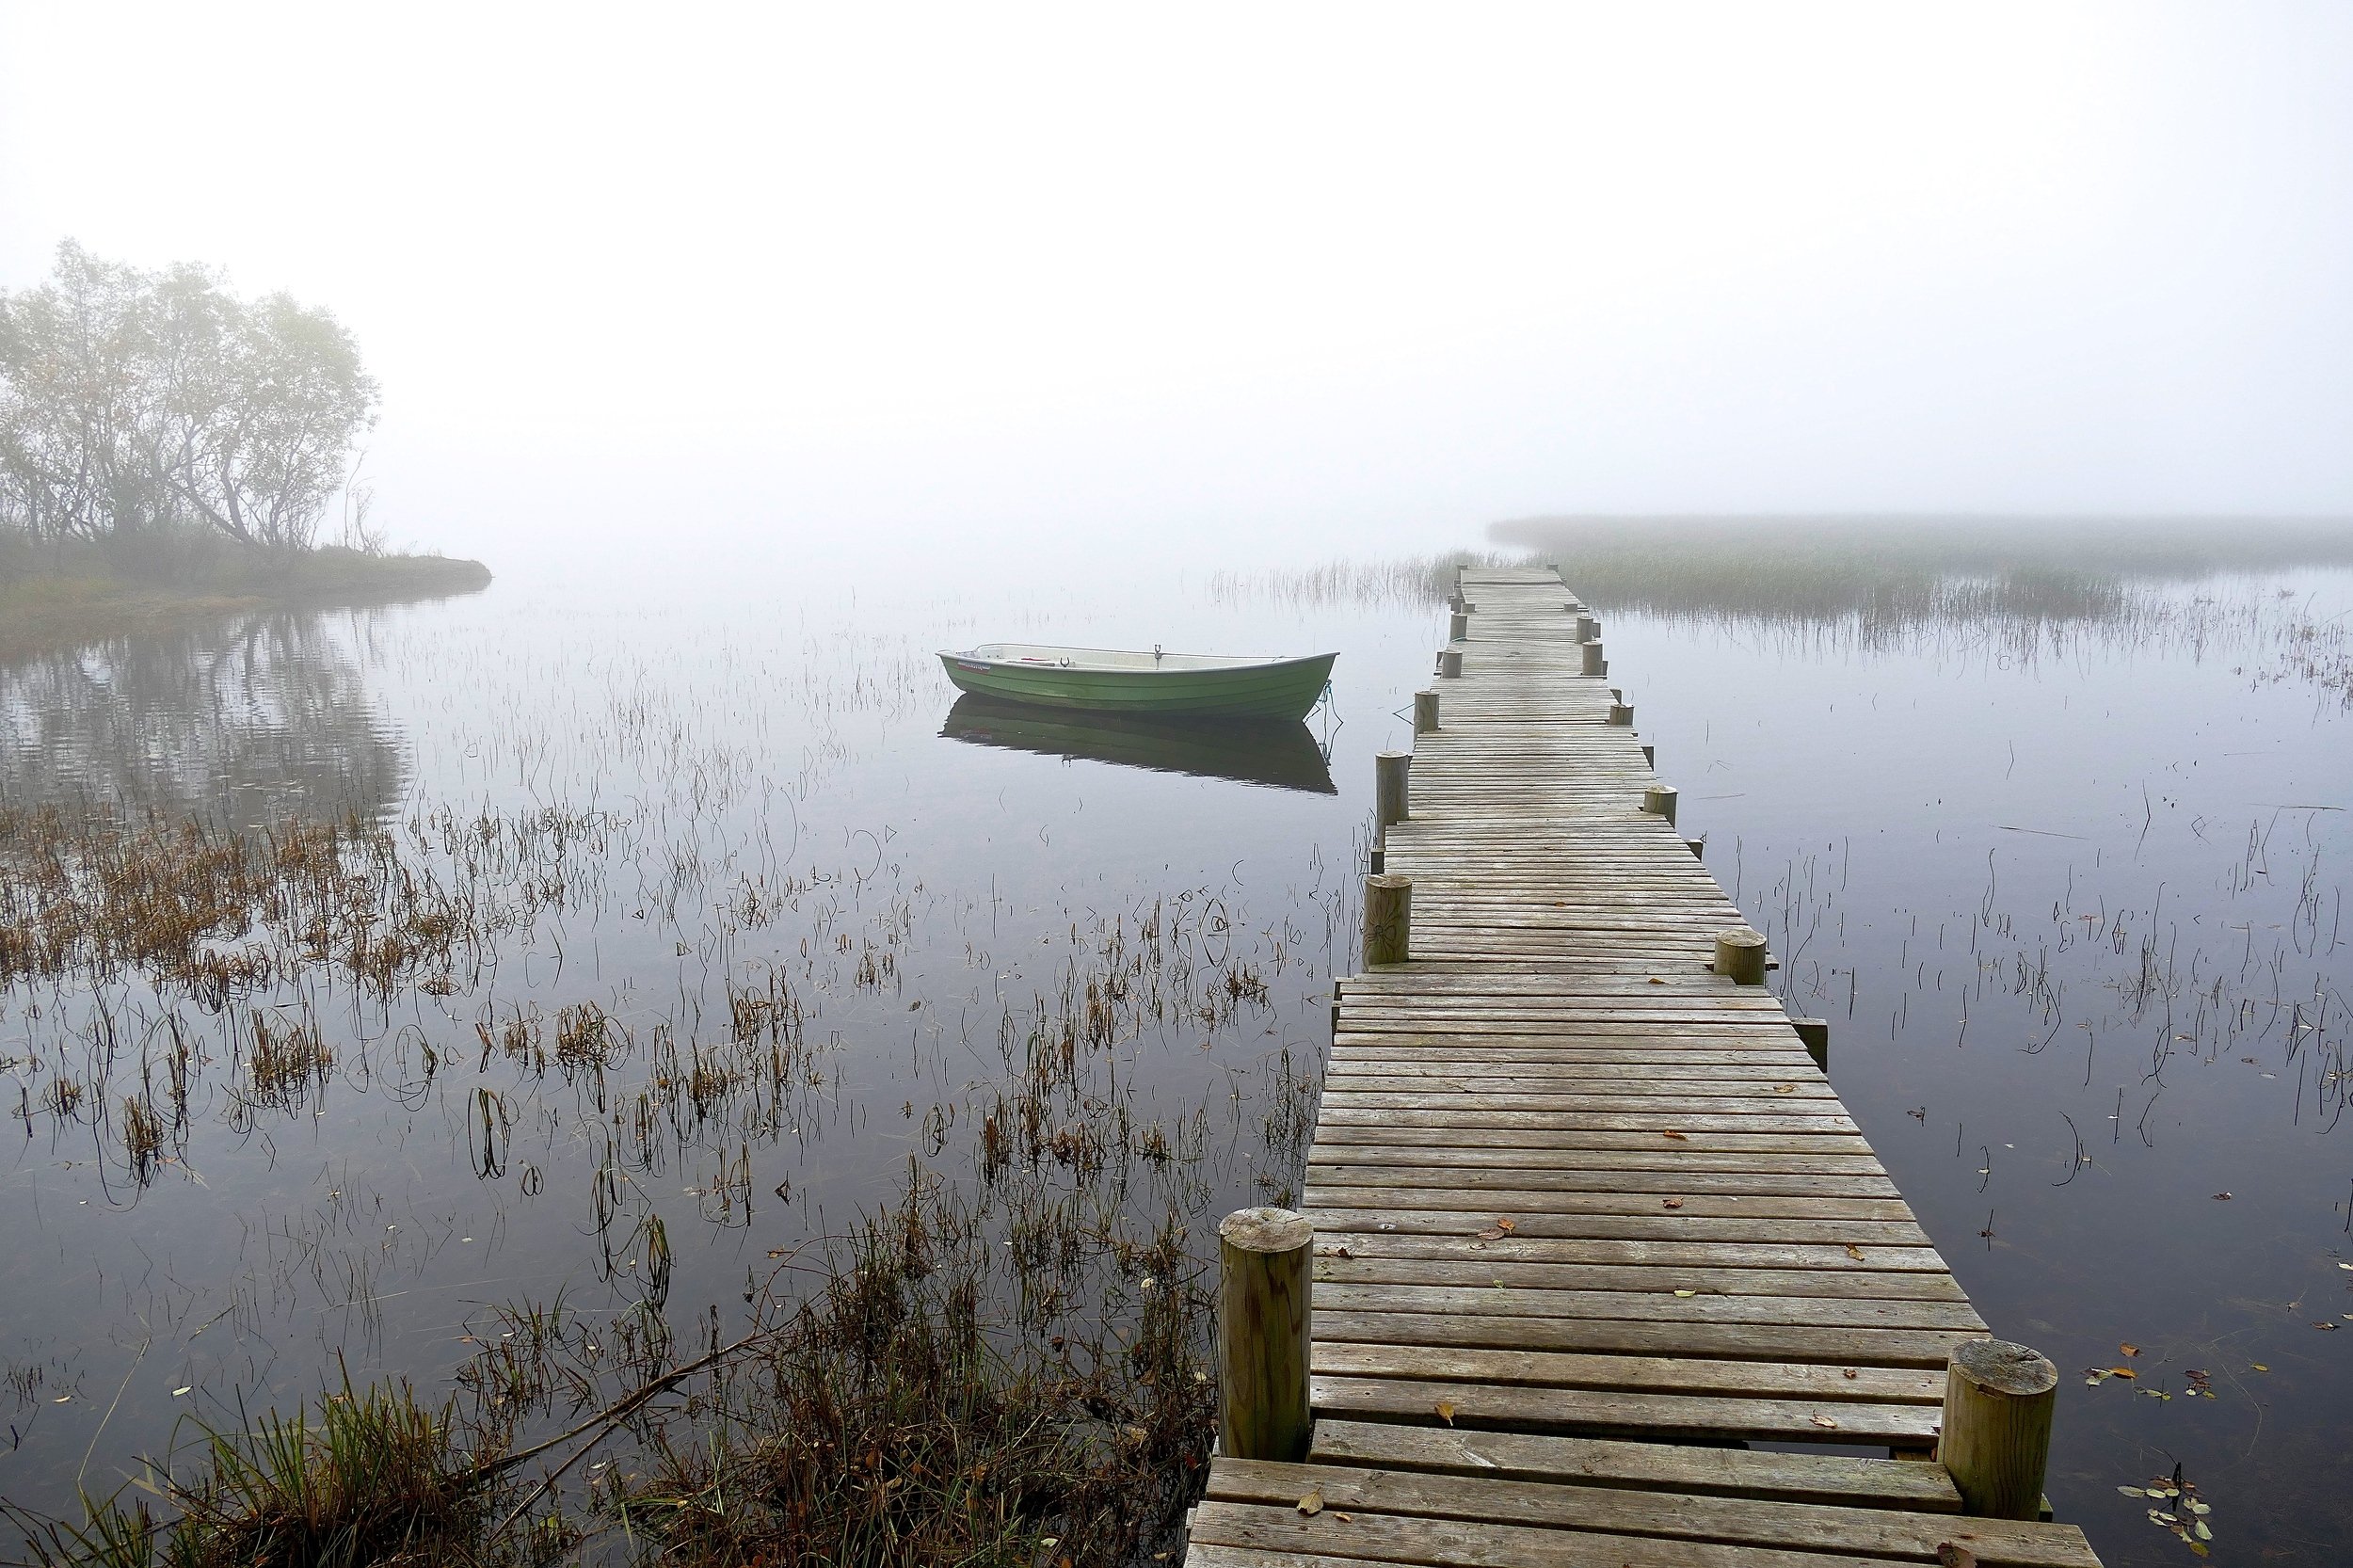 Landscapes, nature, Norway, fog, boat, lake, water, mist, trees, pier, reflection, mood, harmony, peace, , Svetlana Povarova Ree